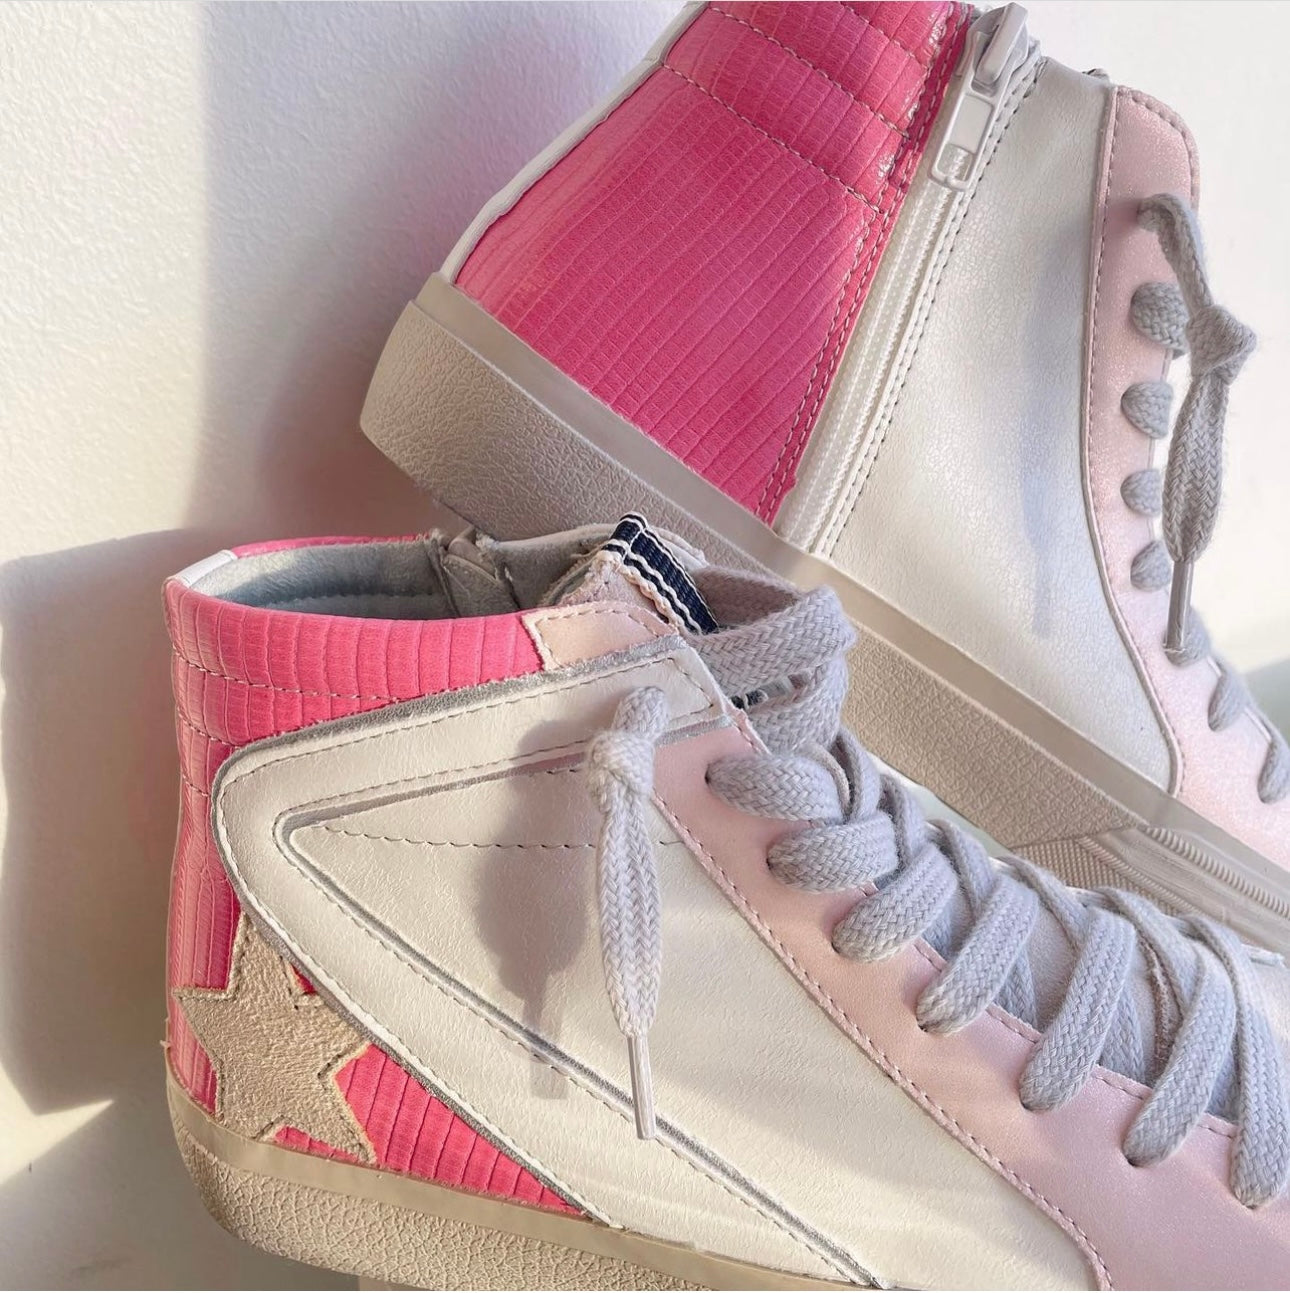 Roxanne Sneaker - Pink Lizard